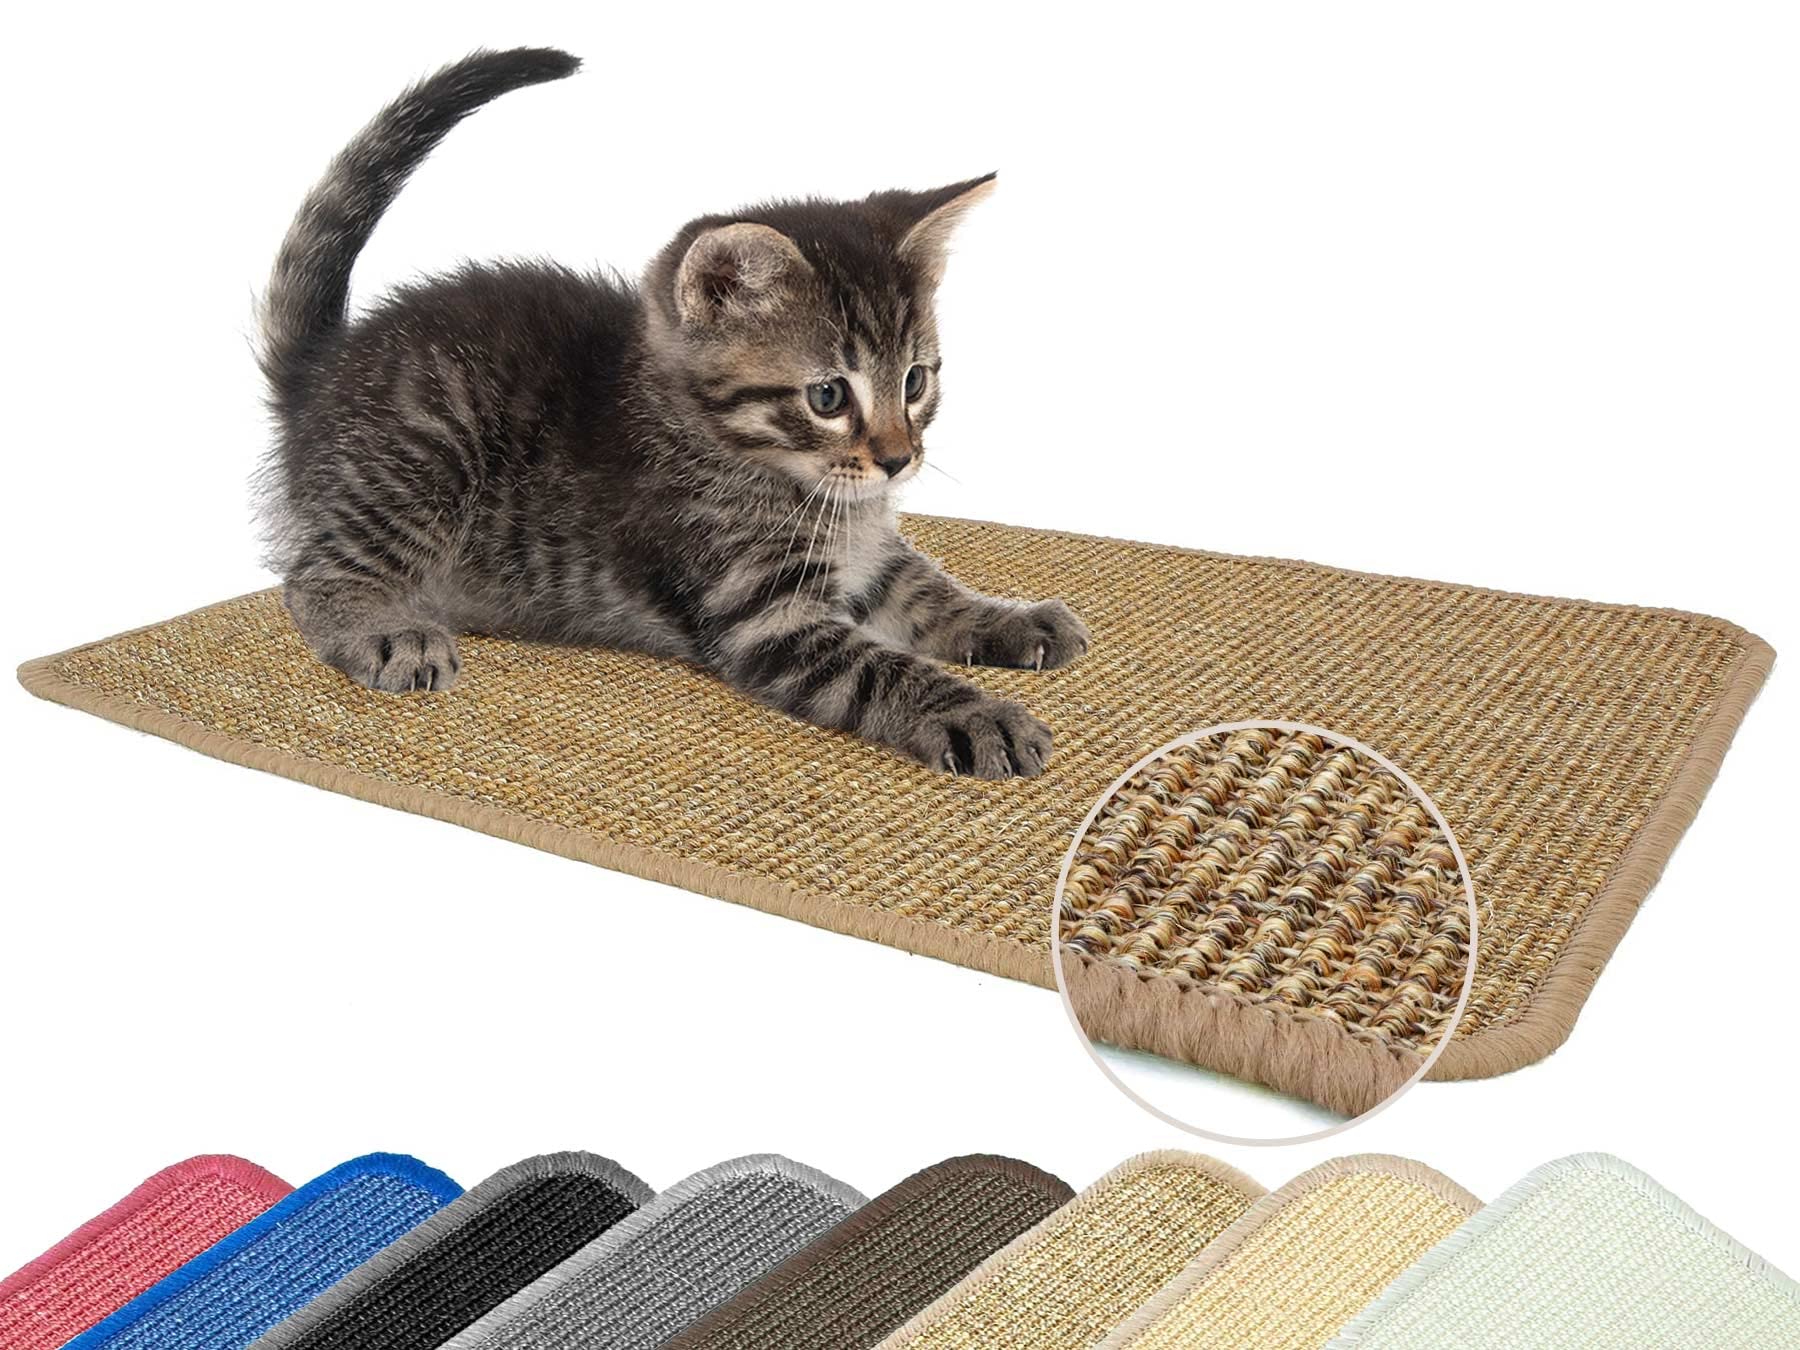 Primaflor Katzen-Kratzmatte - Nuss, 100 x 100 cm, Rutschhemmende Sisalmatte für Krallenpflege, Robuster Kratzpad für Wand, Boden oder Kratzmöbel